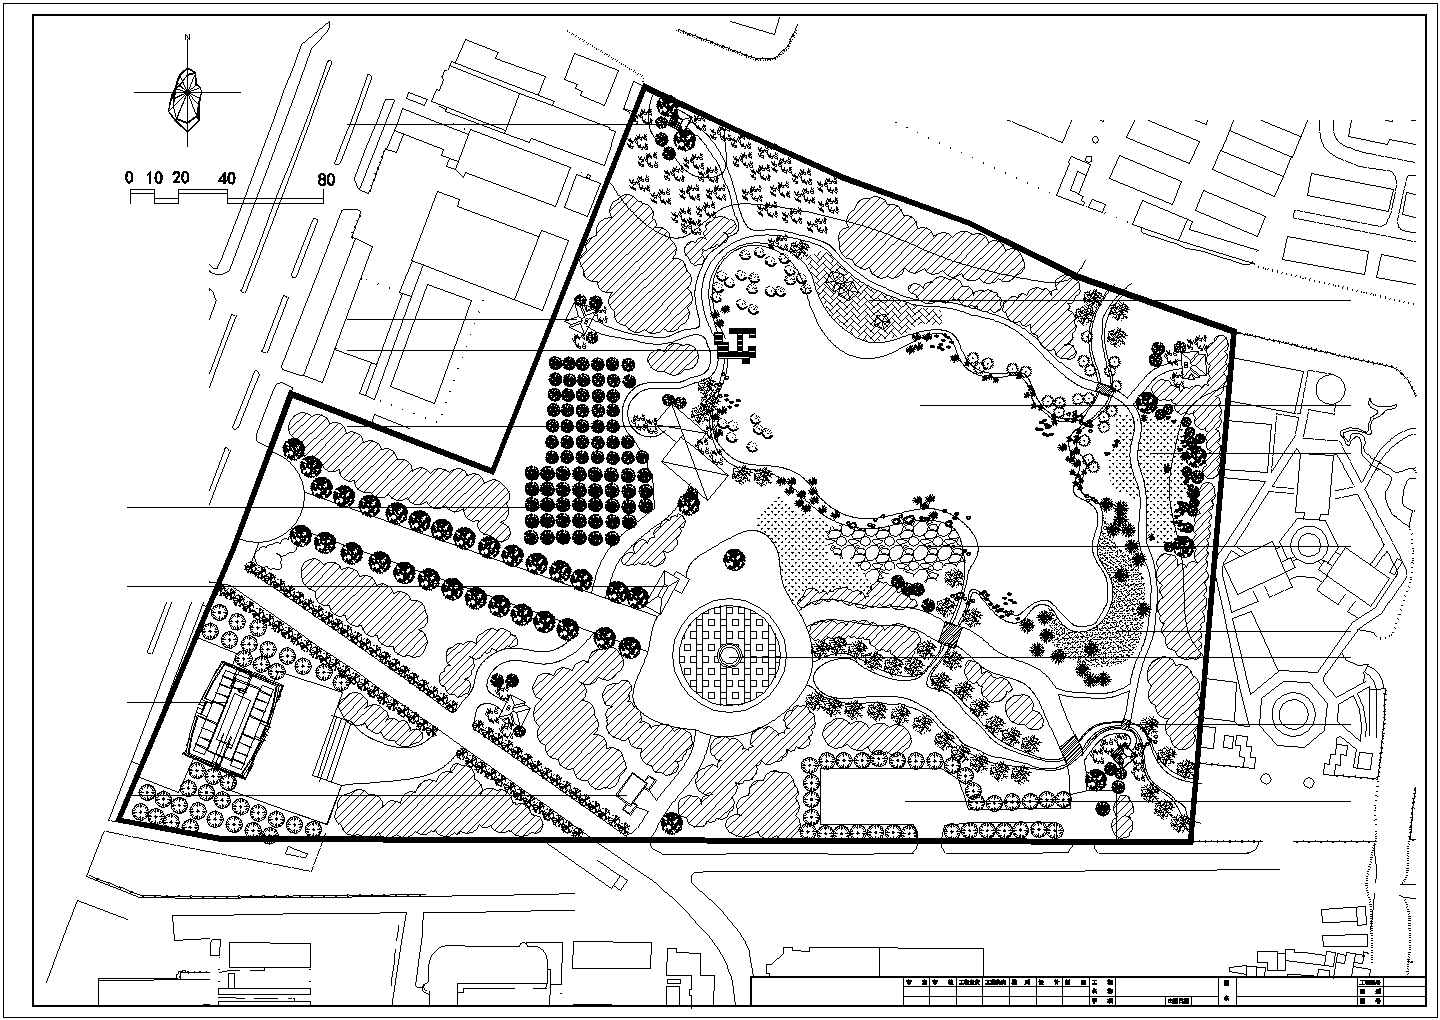 某长方形地块大型公园规划设计cad总平面方案图纸 (甲级院设计)